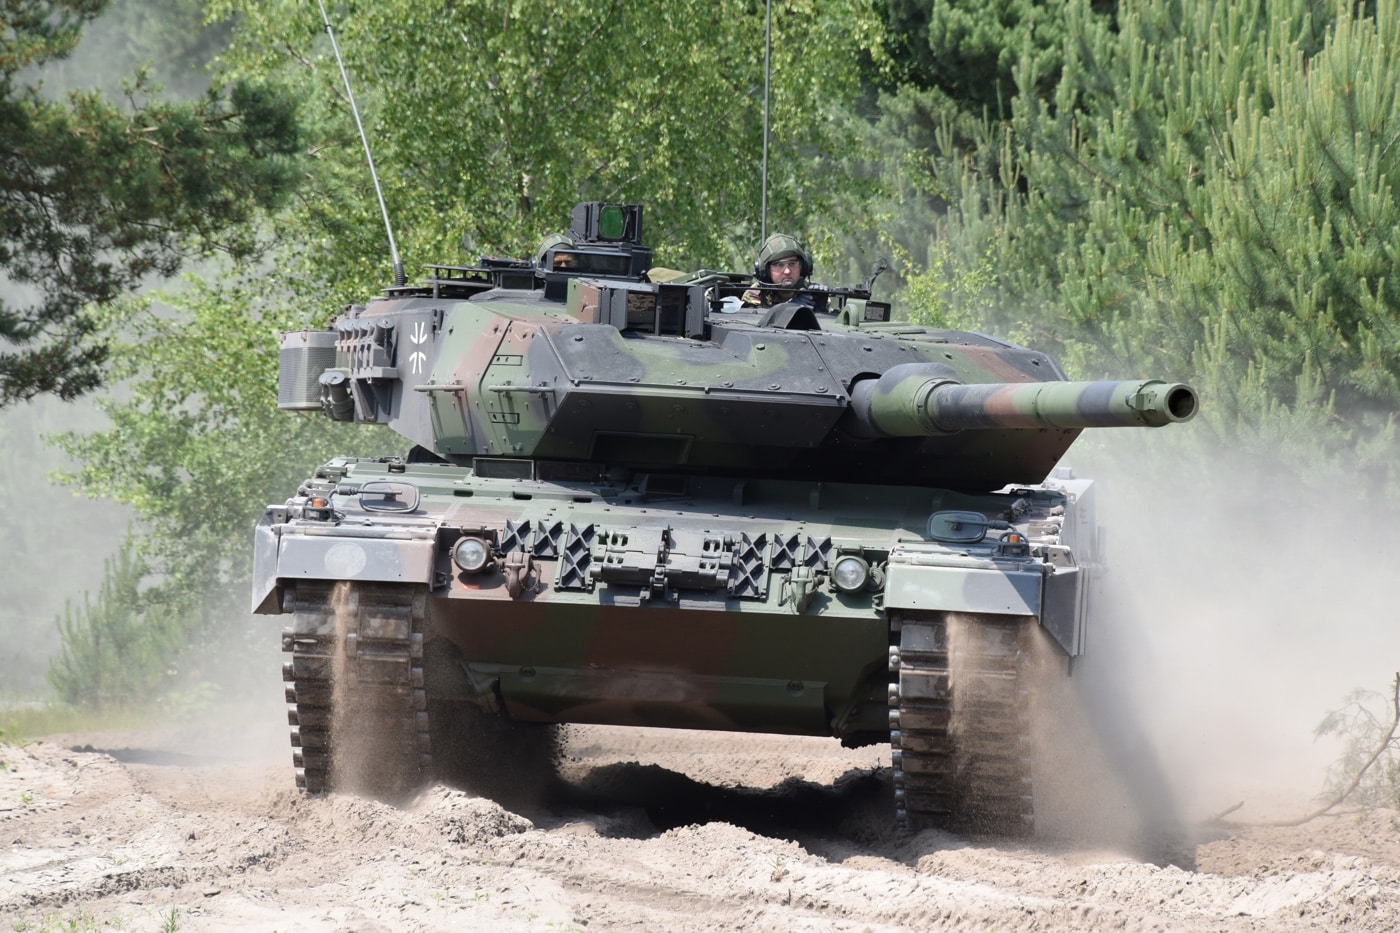 Leopard 2 main battle tank — model 2A7